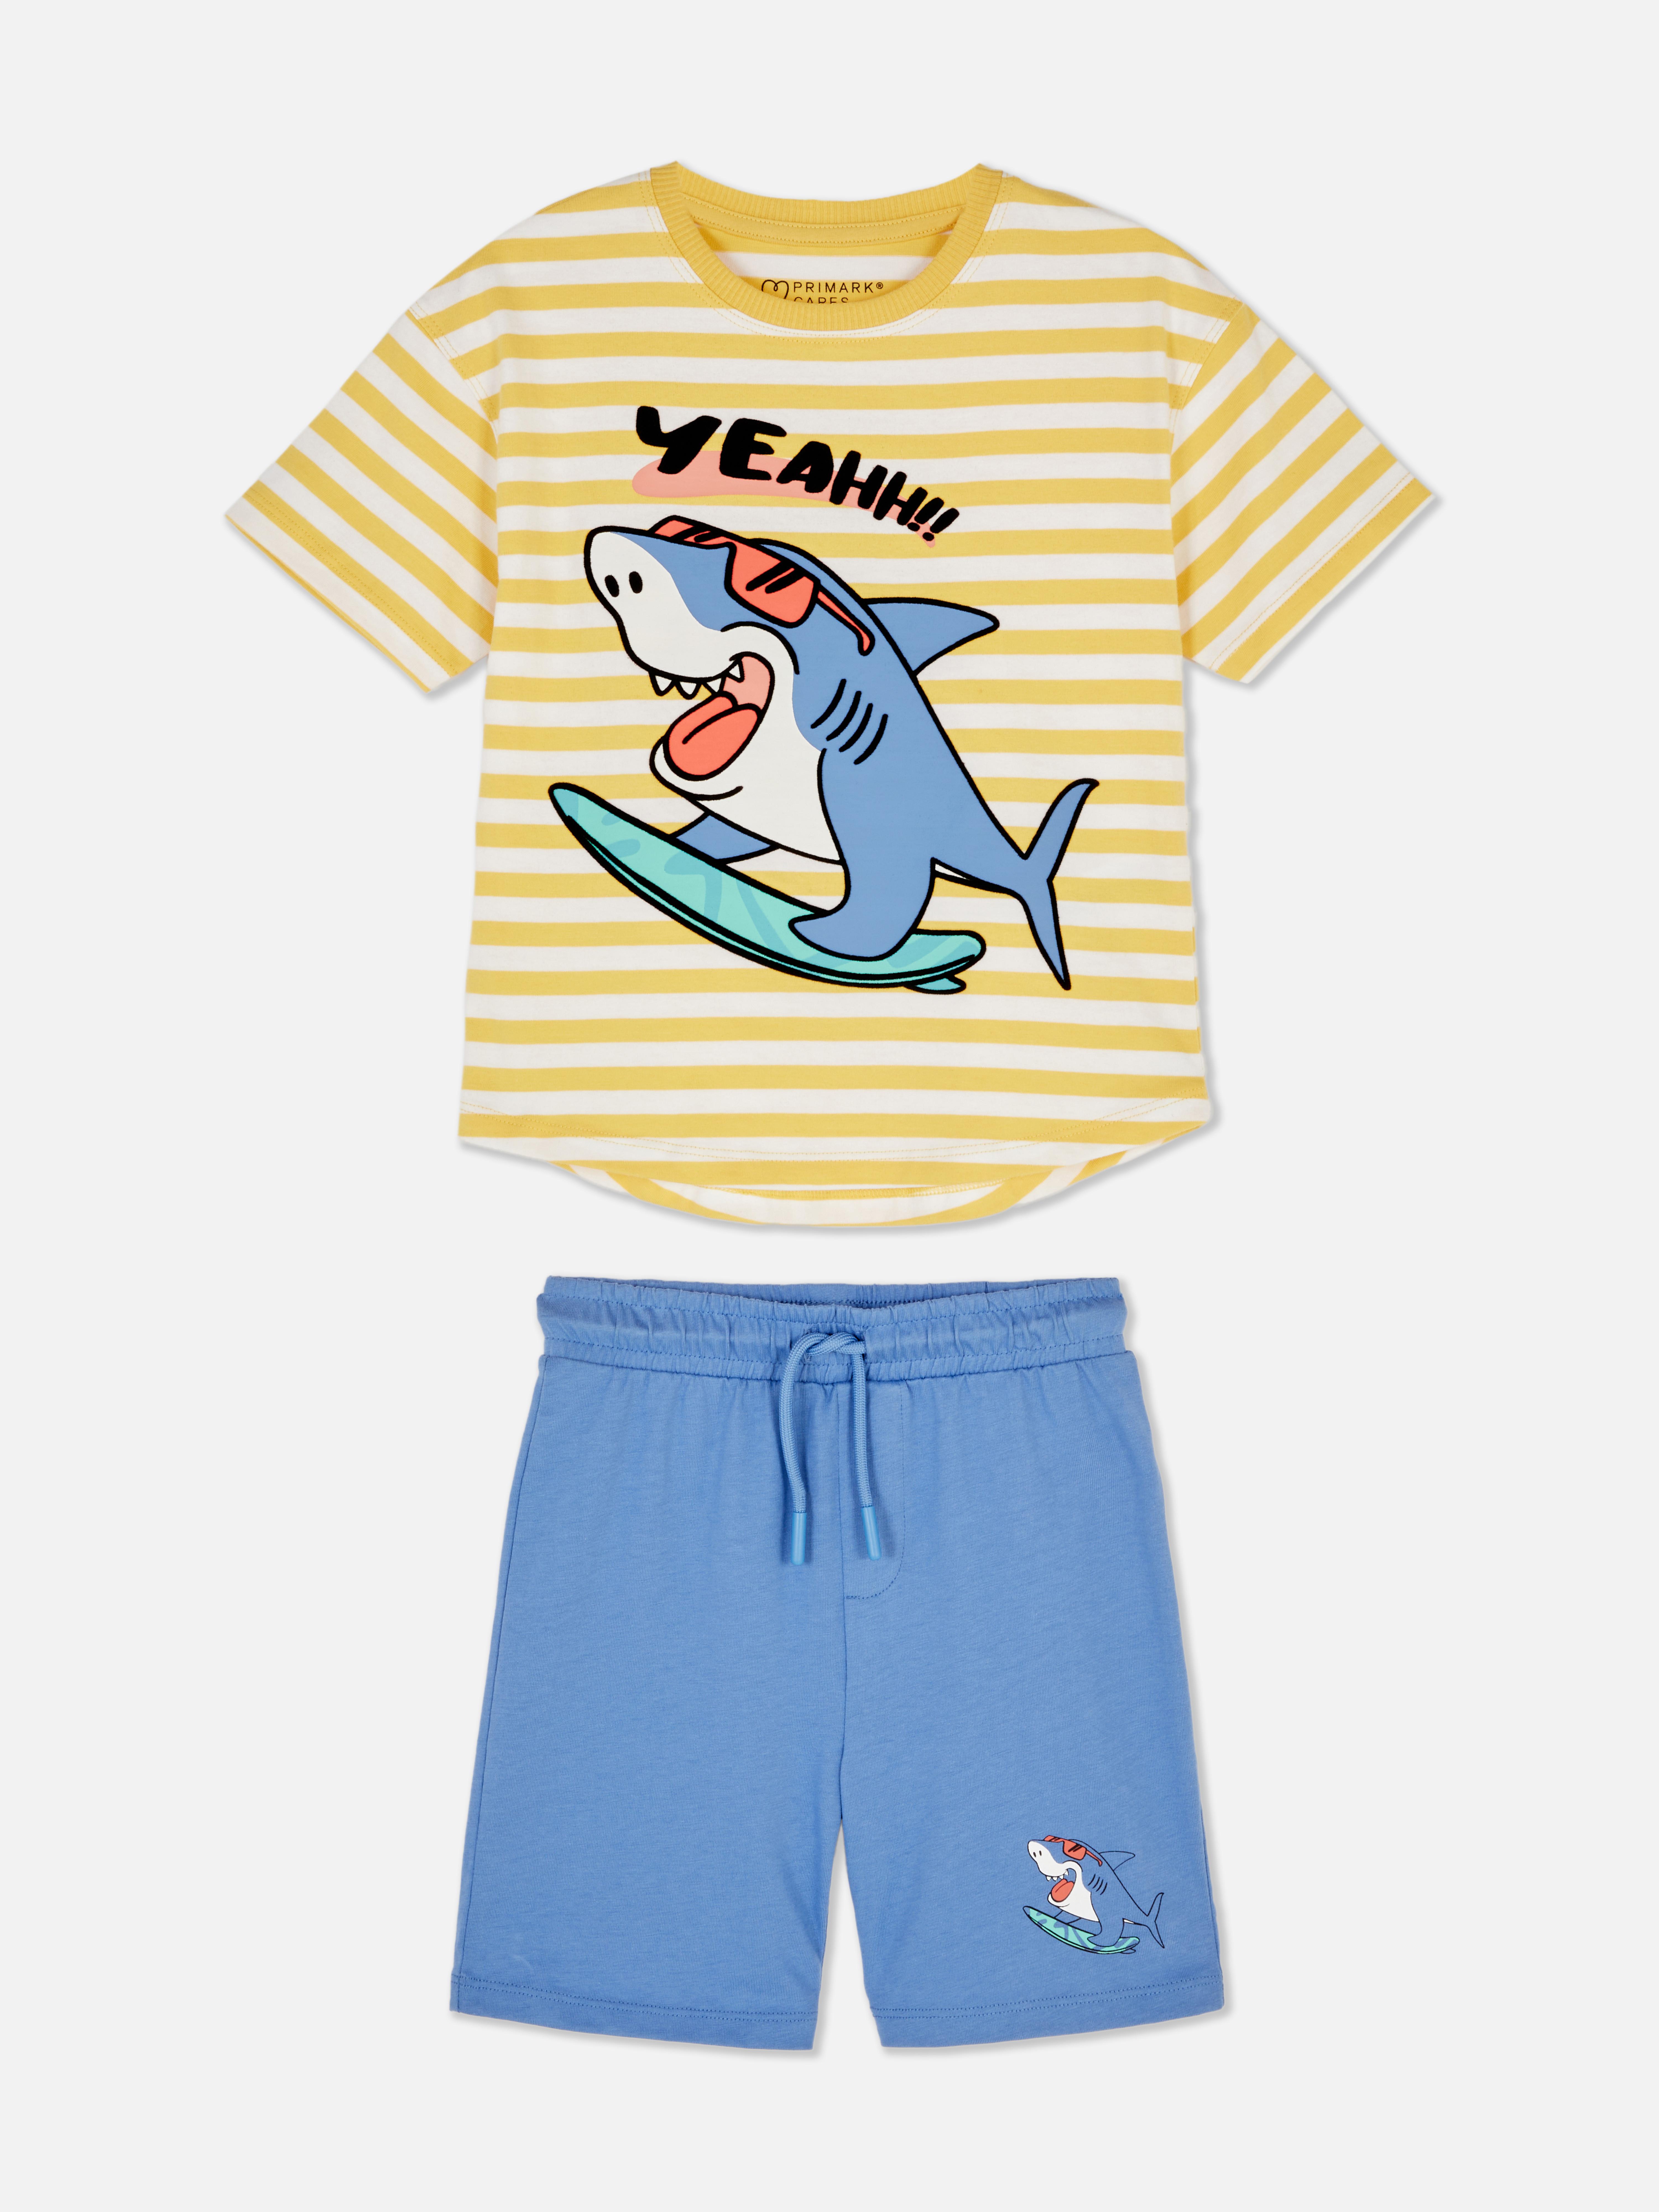 Shark T-Shirt and Shorts Set